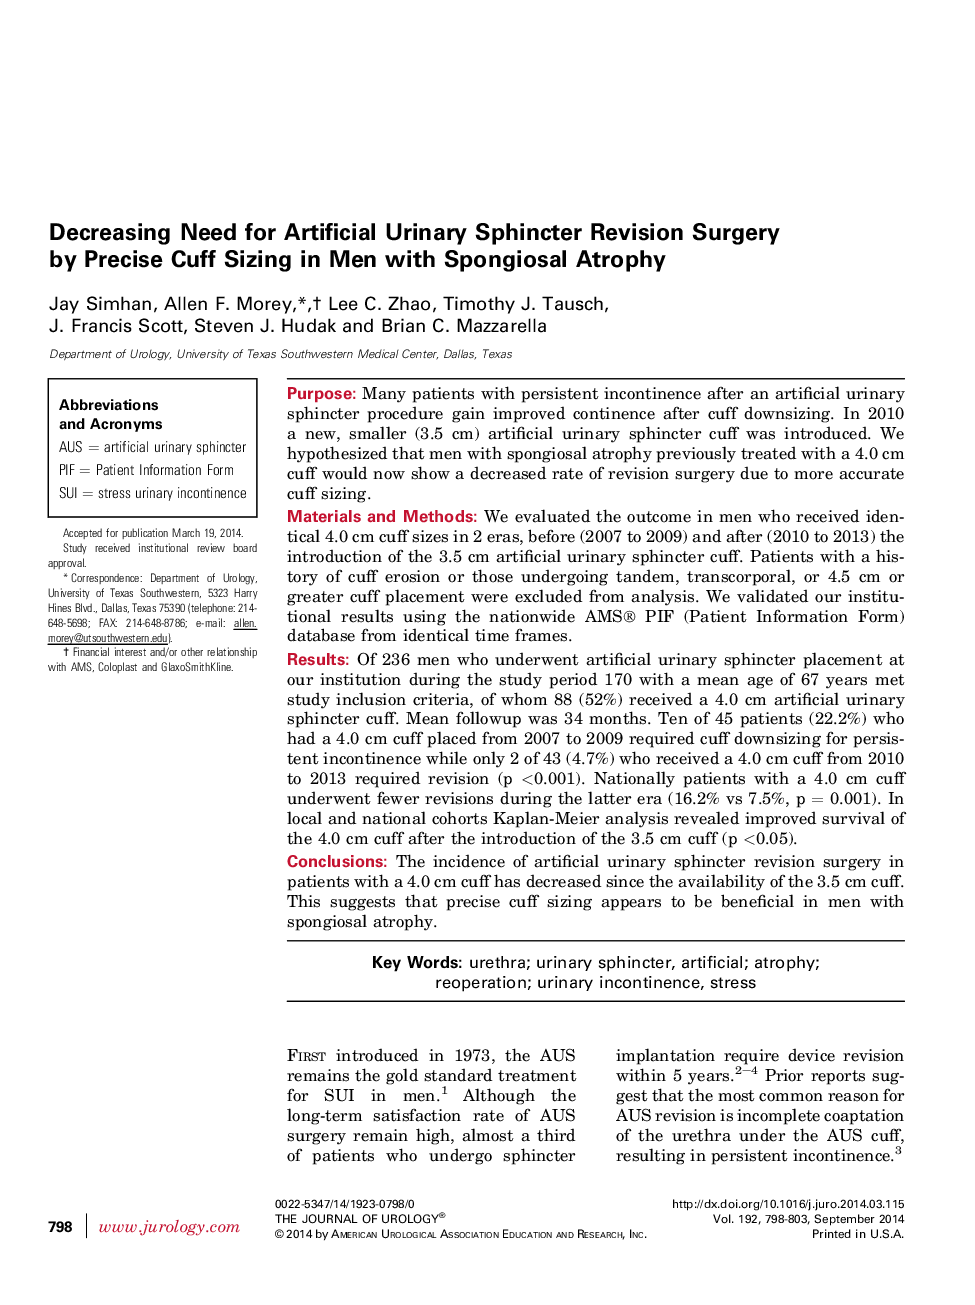 کاهش نیاز به عمل جراحی بازسازی اسفنکتر ادراری مصنوعی با اندازه کاف دقیق در مردان مبتلا به آتروفی اسپنژیوز 